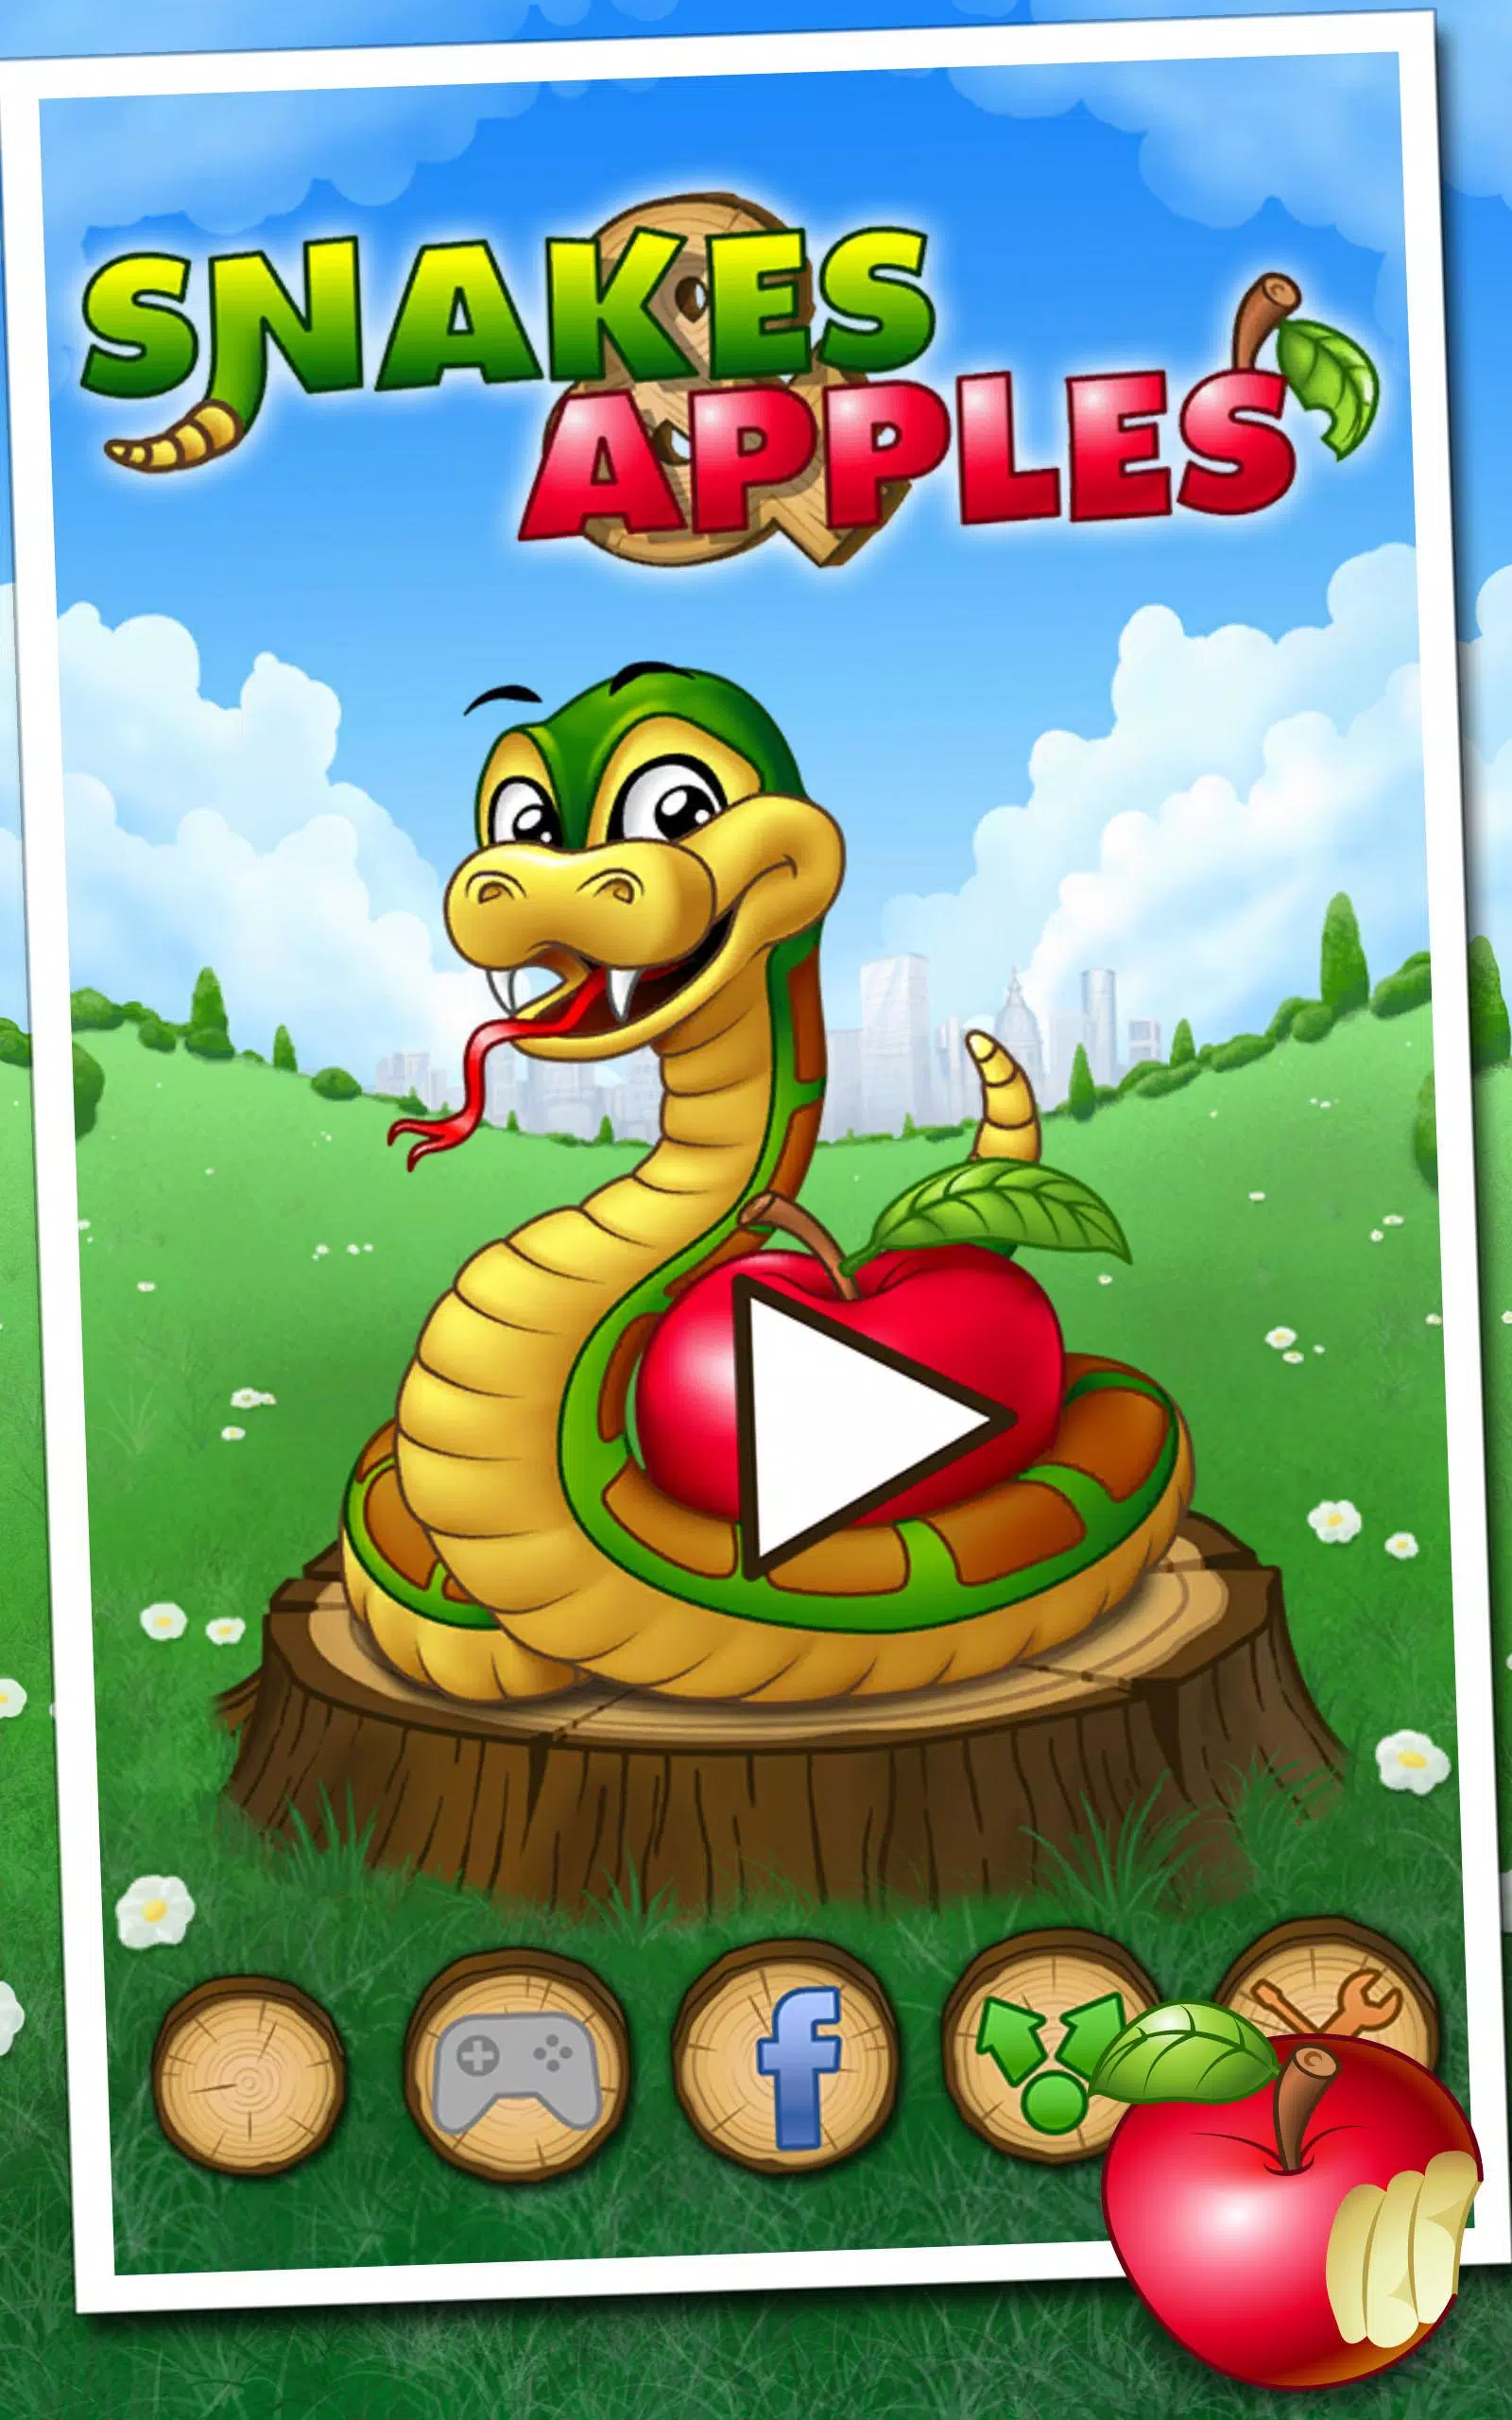 Um jogo de cobra clássico Canvas elemento Android, cobra, animais